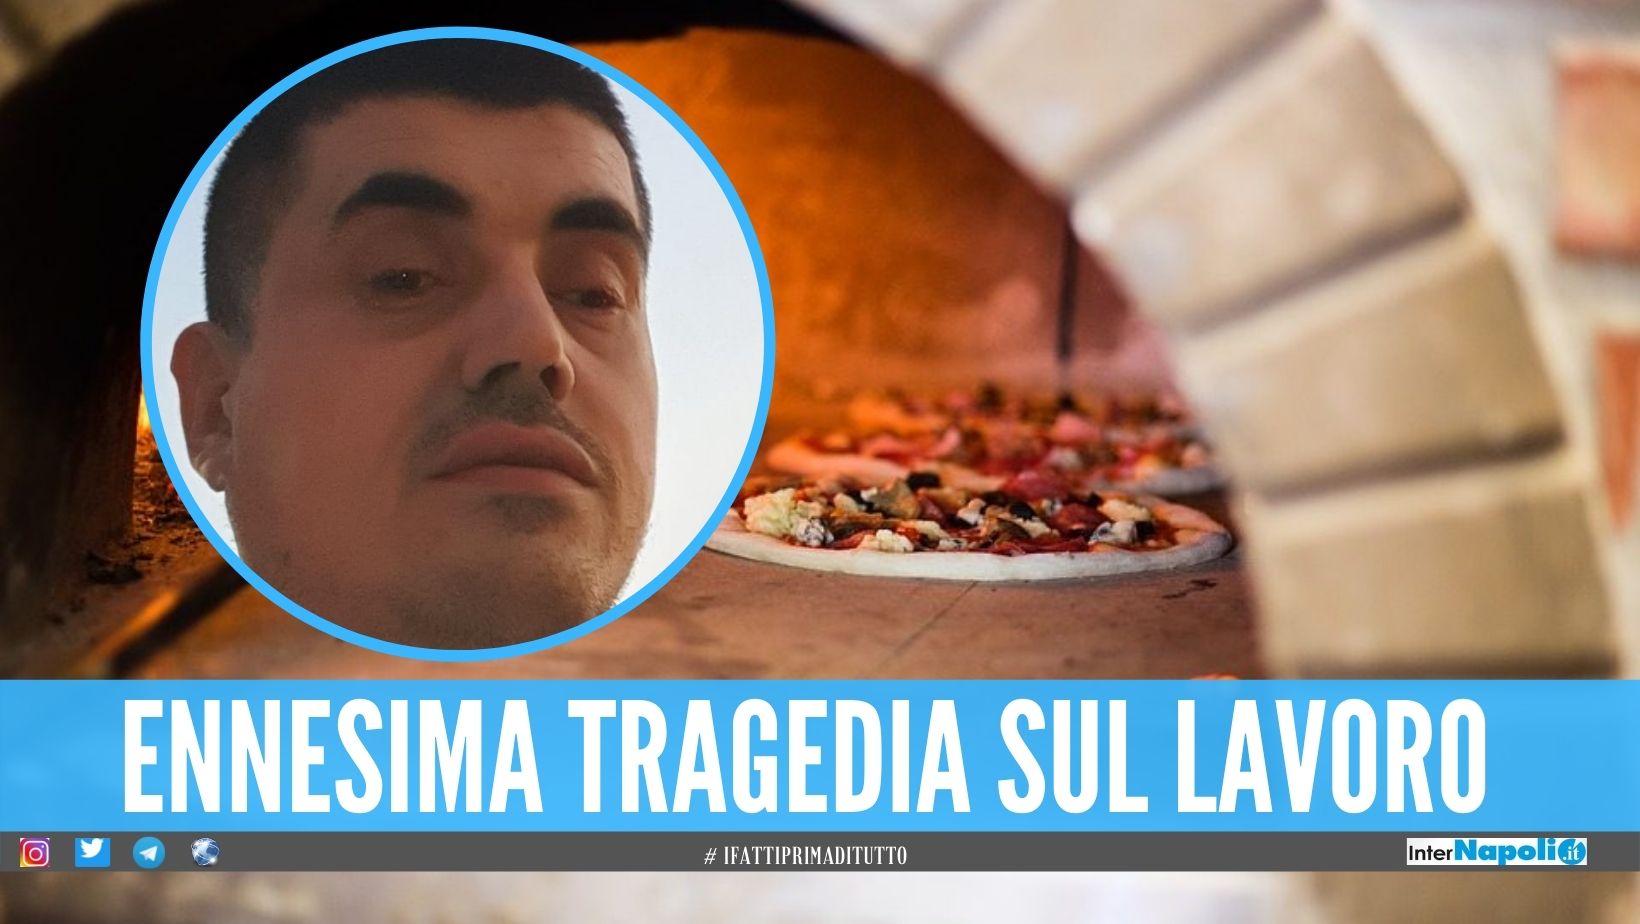 Michele muore schiacciato dal forno, oggi i funerali del pizzaiolo a Portici